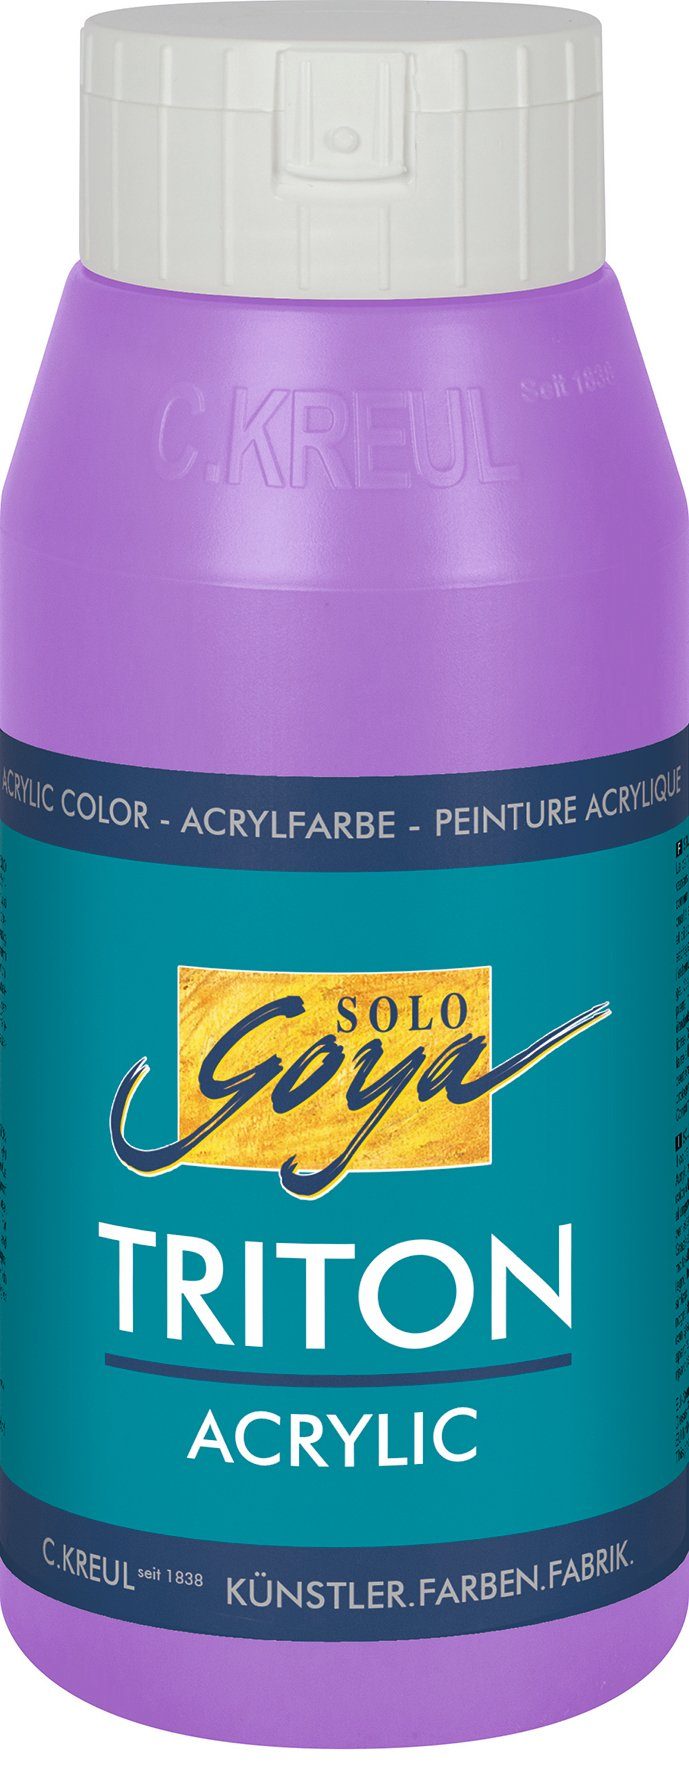 Flieder ml Solo Triton Acrylic, Kreul 750 Goya Acrylfarbe